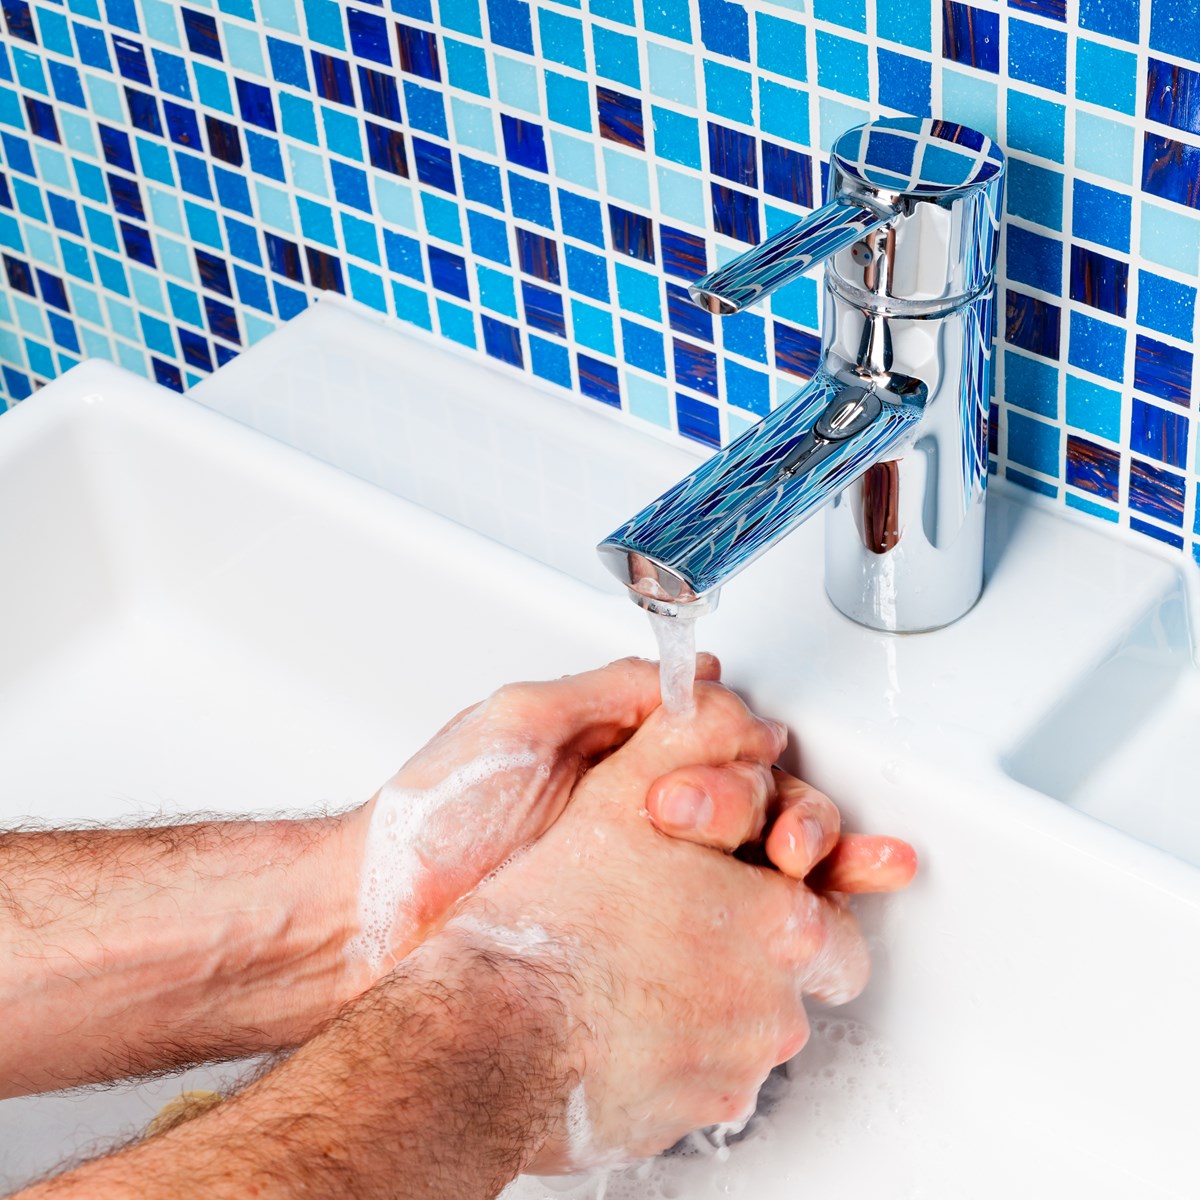 Vask hænder lyder blandt andet et af rådene fra Sundhedsstyrelsen